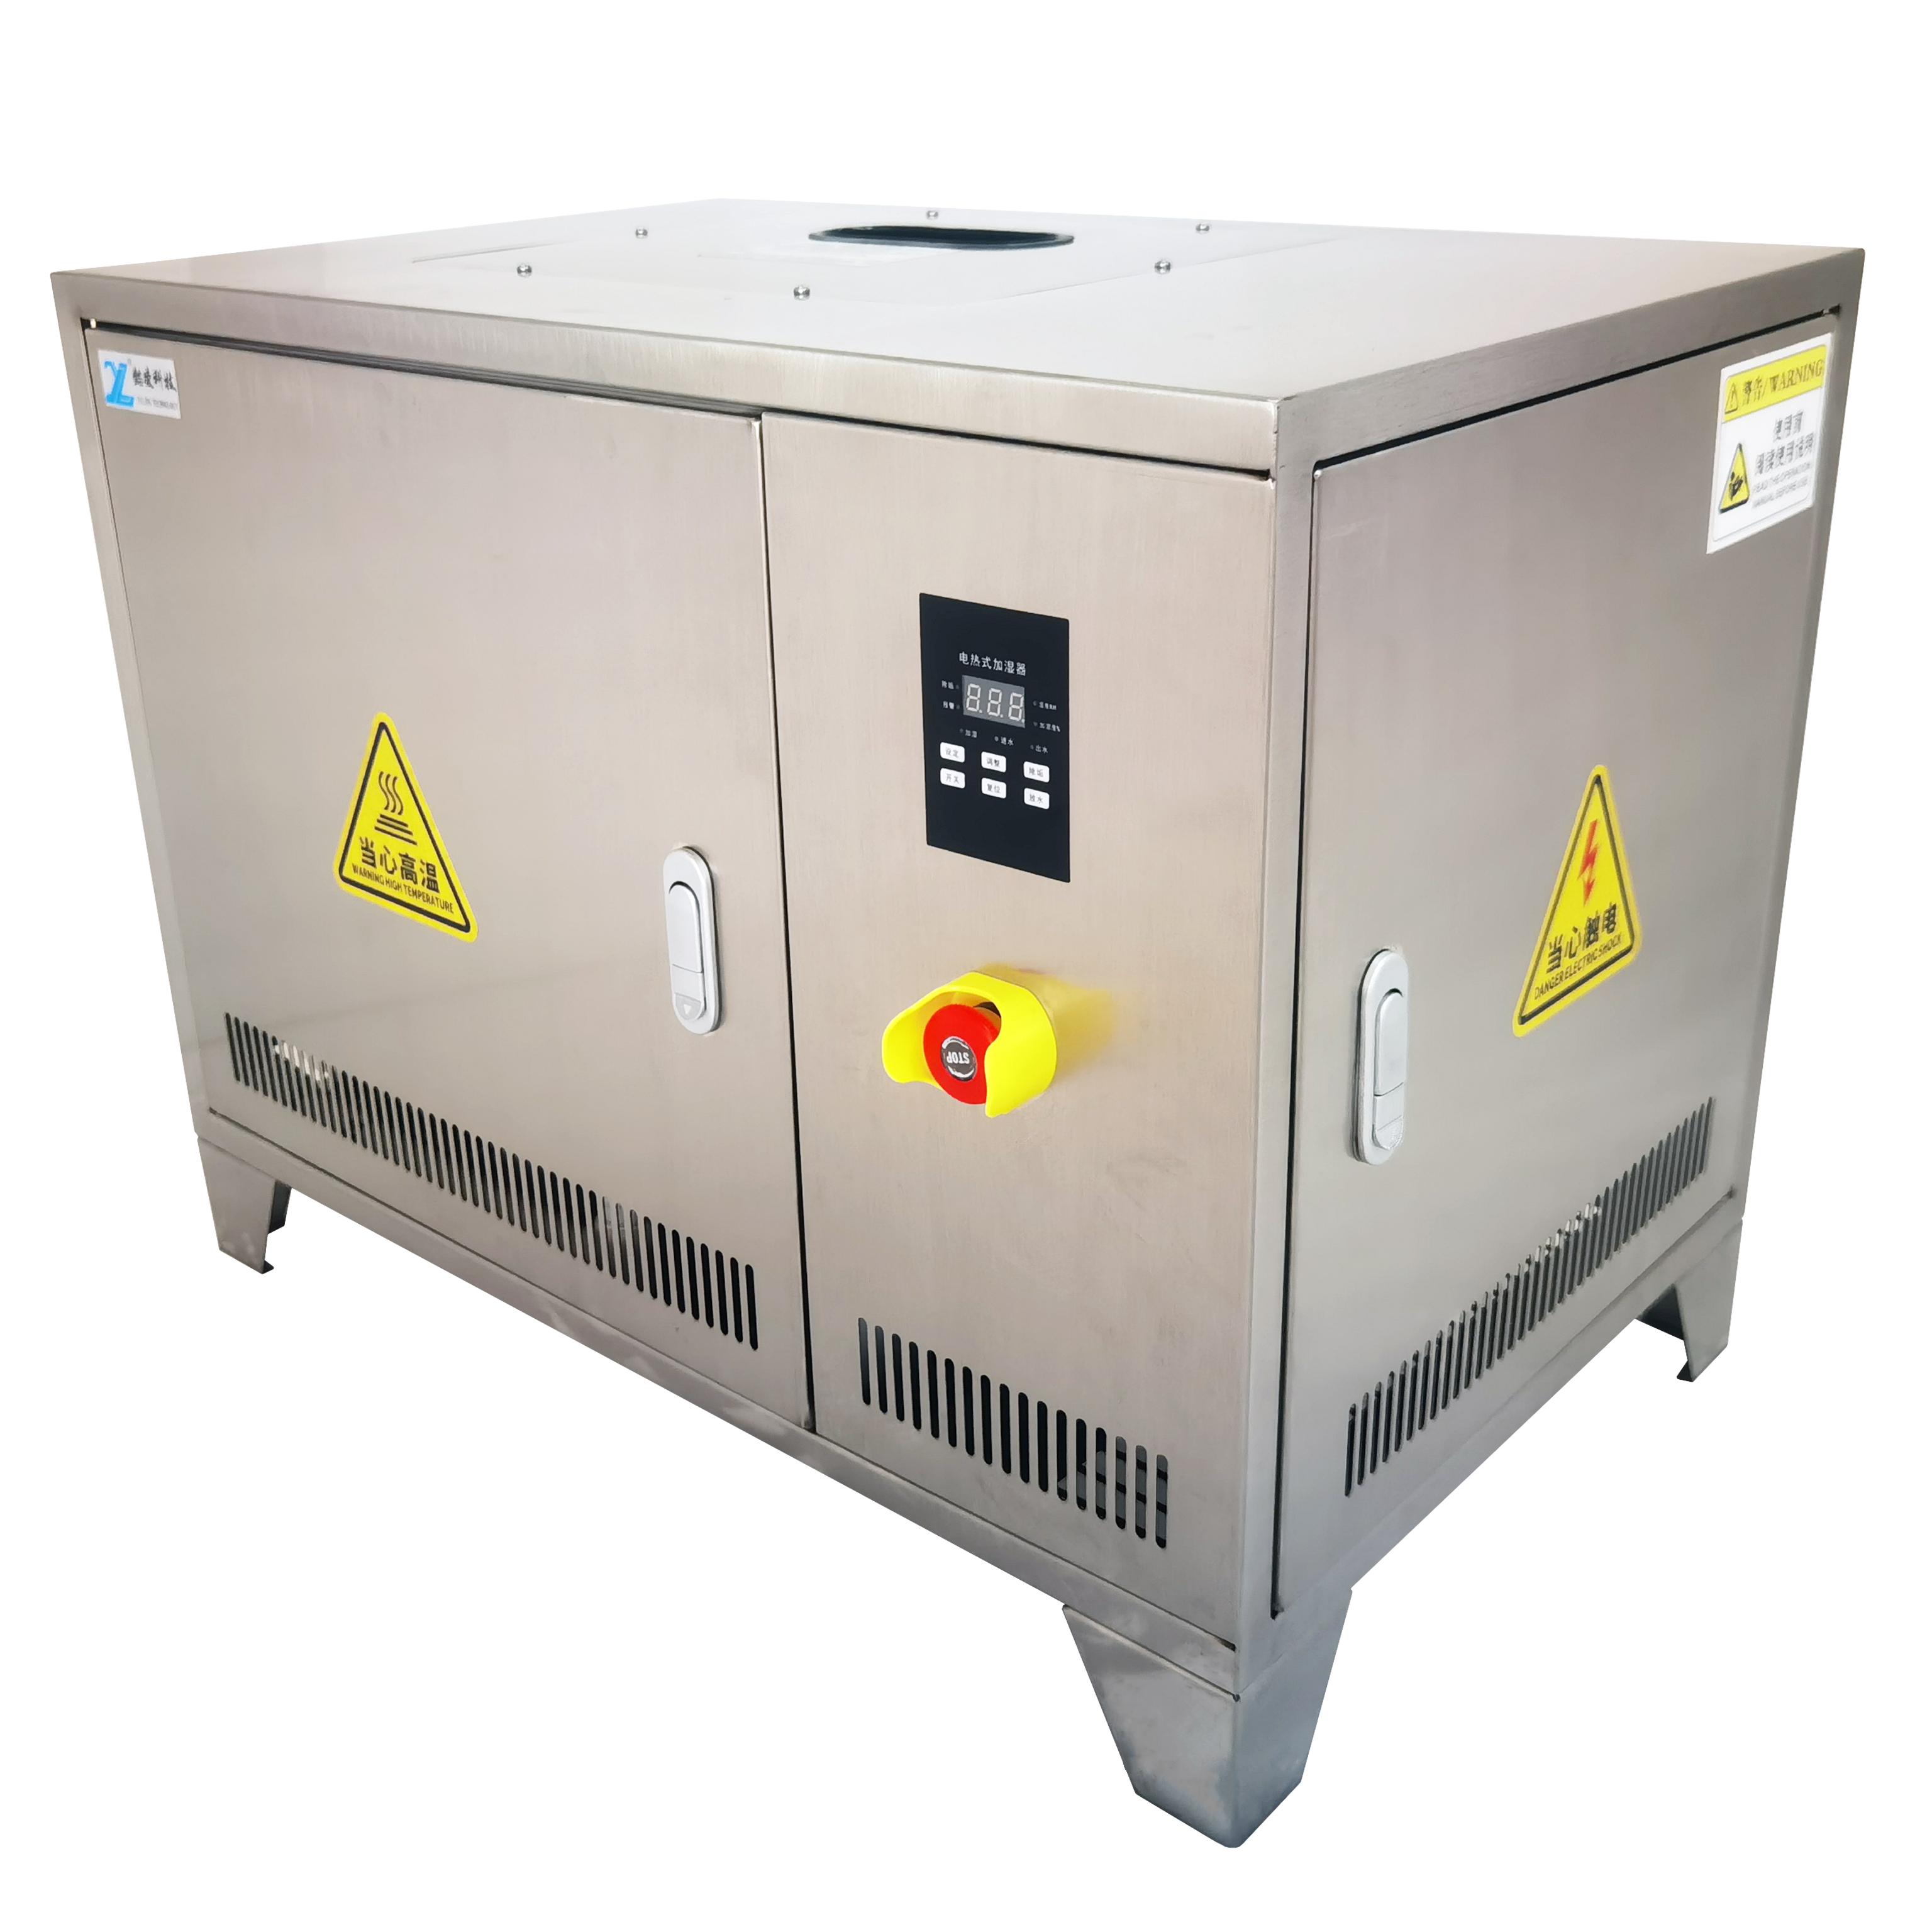 供应与空调配套使用的配套电热加湿器YLDR—4—B厂家直销